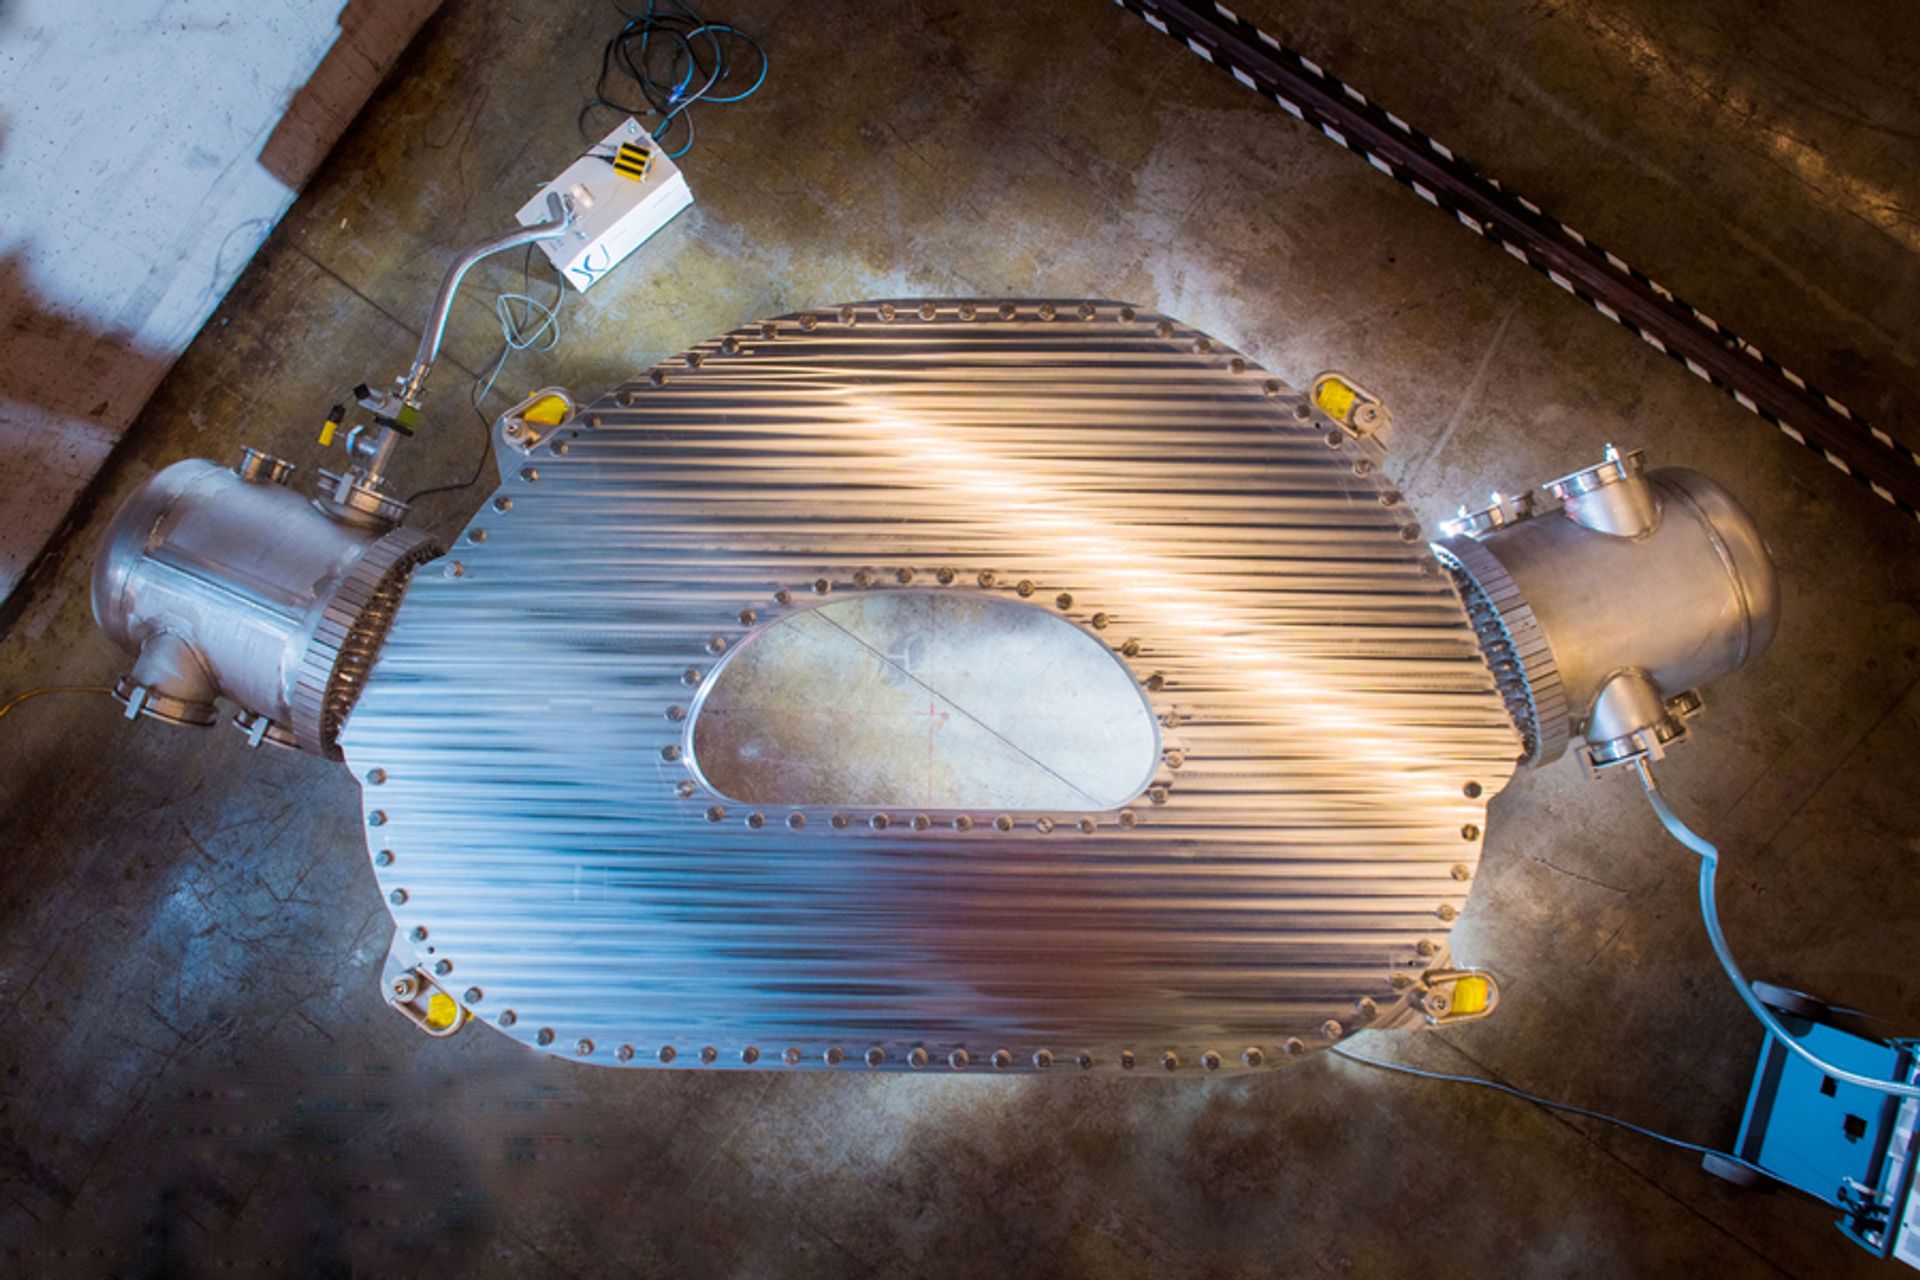 Il grande magnete superconduttore ad alta temperatura in scala reale, progettato e costruito dalla Commonwealth Fusion Systems e dal Plasma Science and Fusion Center (PSFC) del Massachusetts Institute of Technology, che ha generato un campo magnetico da record di 20 tesla, il più potente del mondo. (Foto: Gretchen Ertl, CFS/MIT-PSFC, 2021)